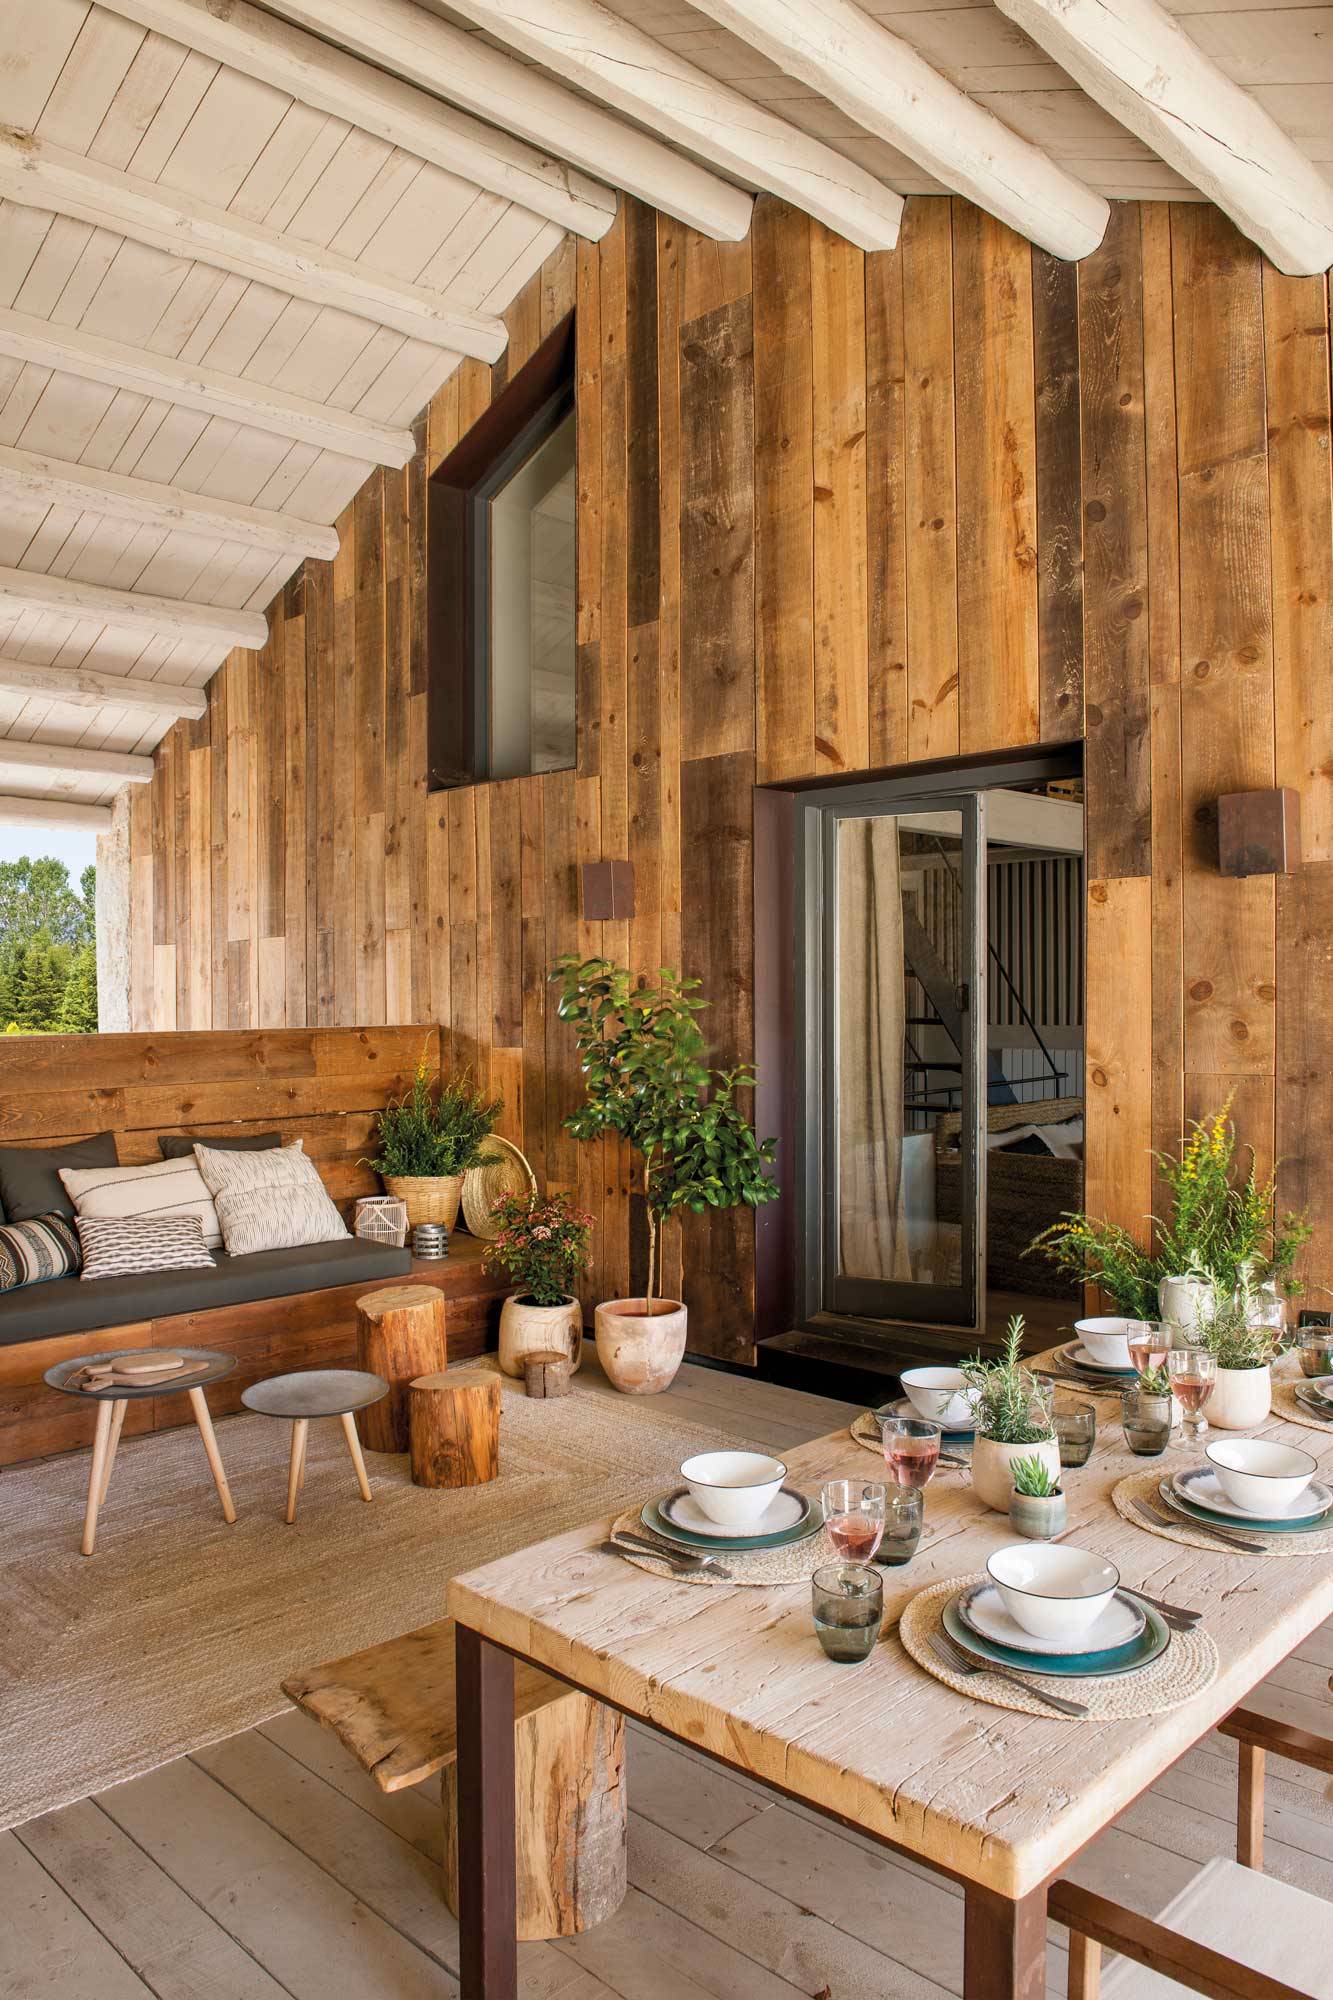 terraza-casa-de-madera-estilo-rustico-con-comedor-00501998